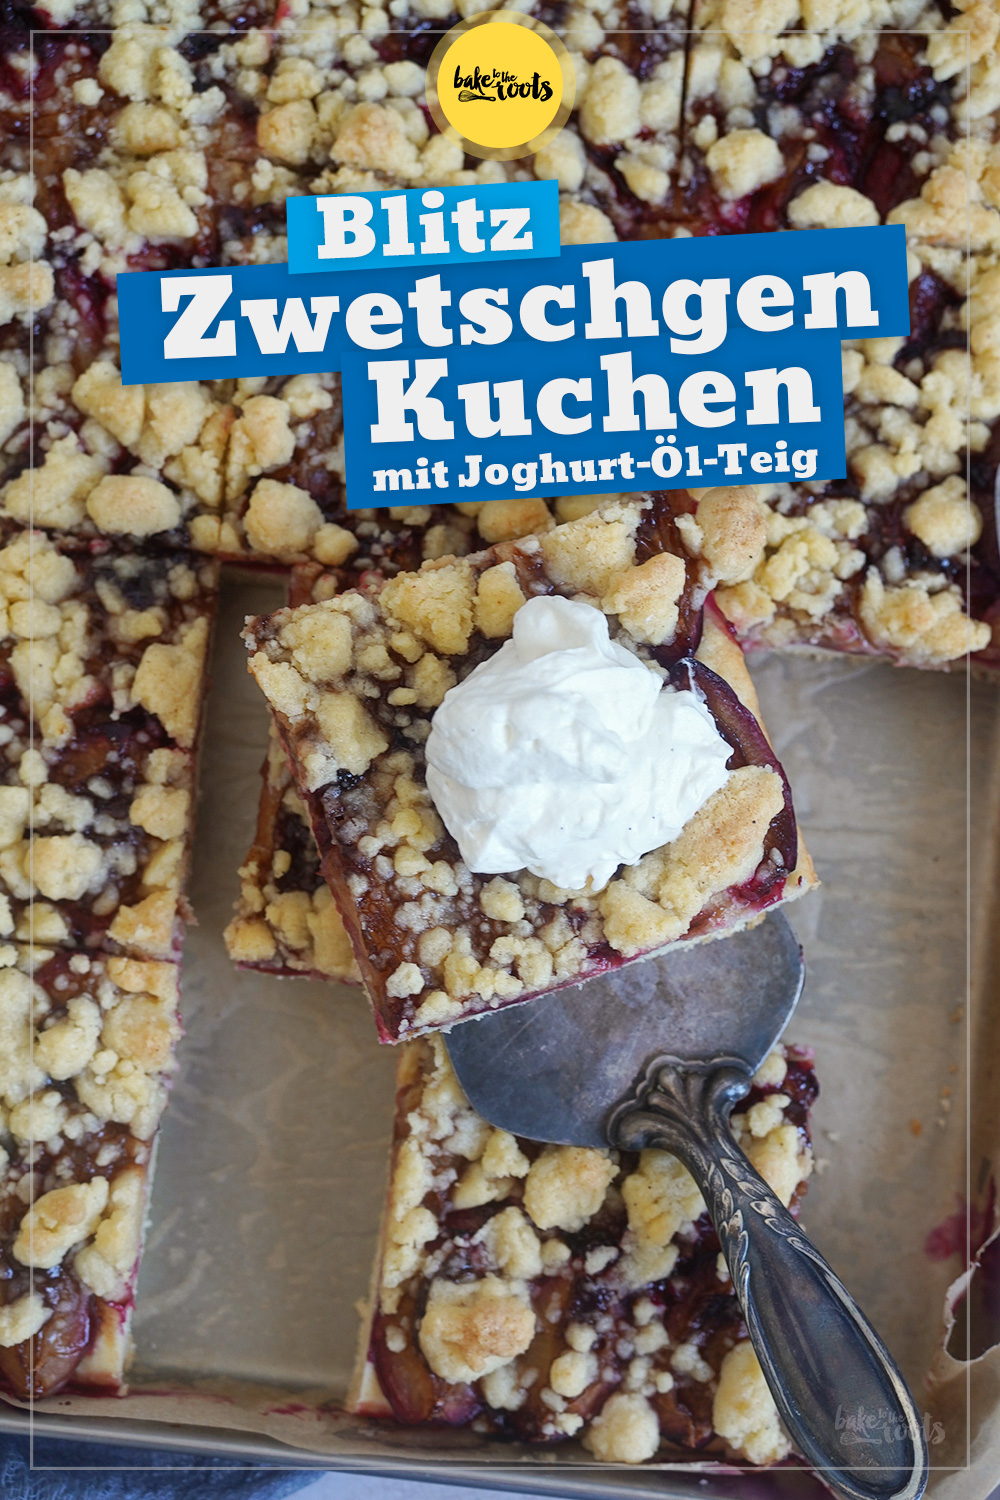 Blitz Zwetschgenkuchen mit Streuseln (Joghurt-Öl-Teig) | Bake to the roots